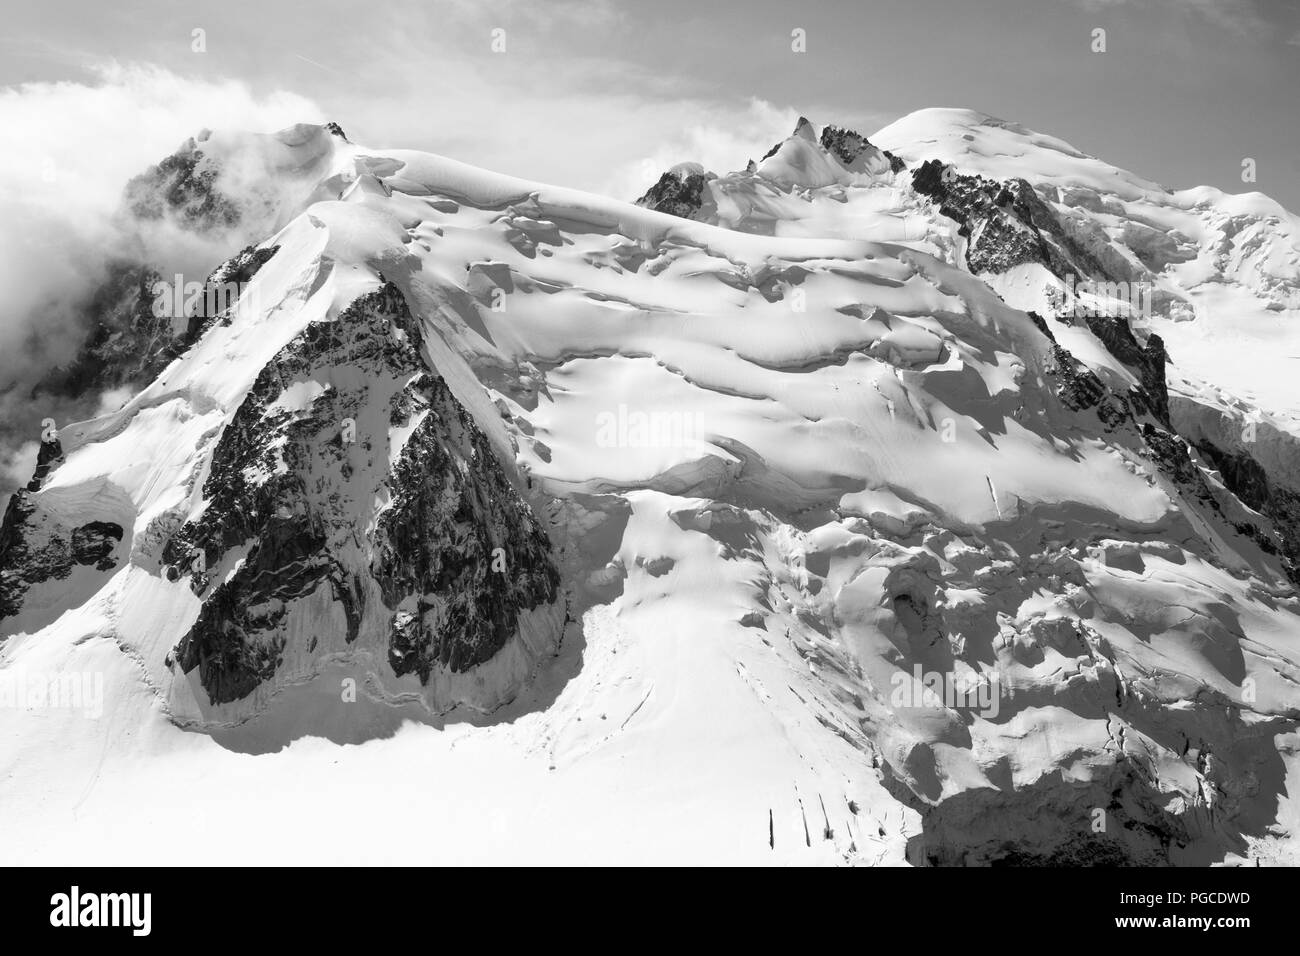 Chamonix, Francia. El 24 de agosto de 2018. Fine Art, imágenes de paisaje de Mont Blanc y de las montañas circundantes, Chamonix, Francia 24/08/2018 Foto de stock